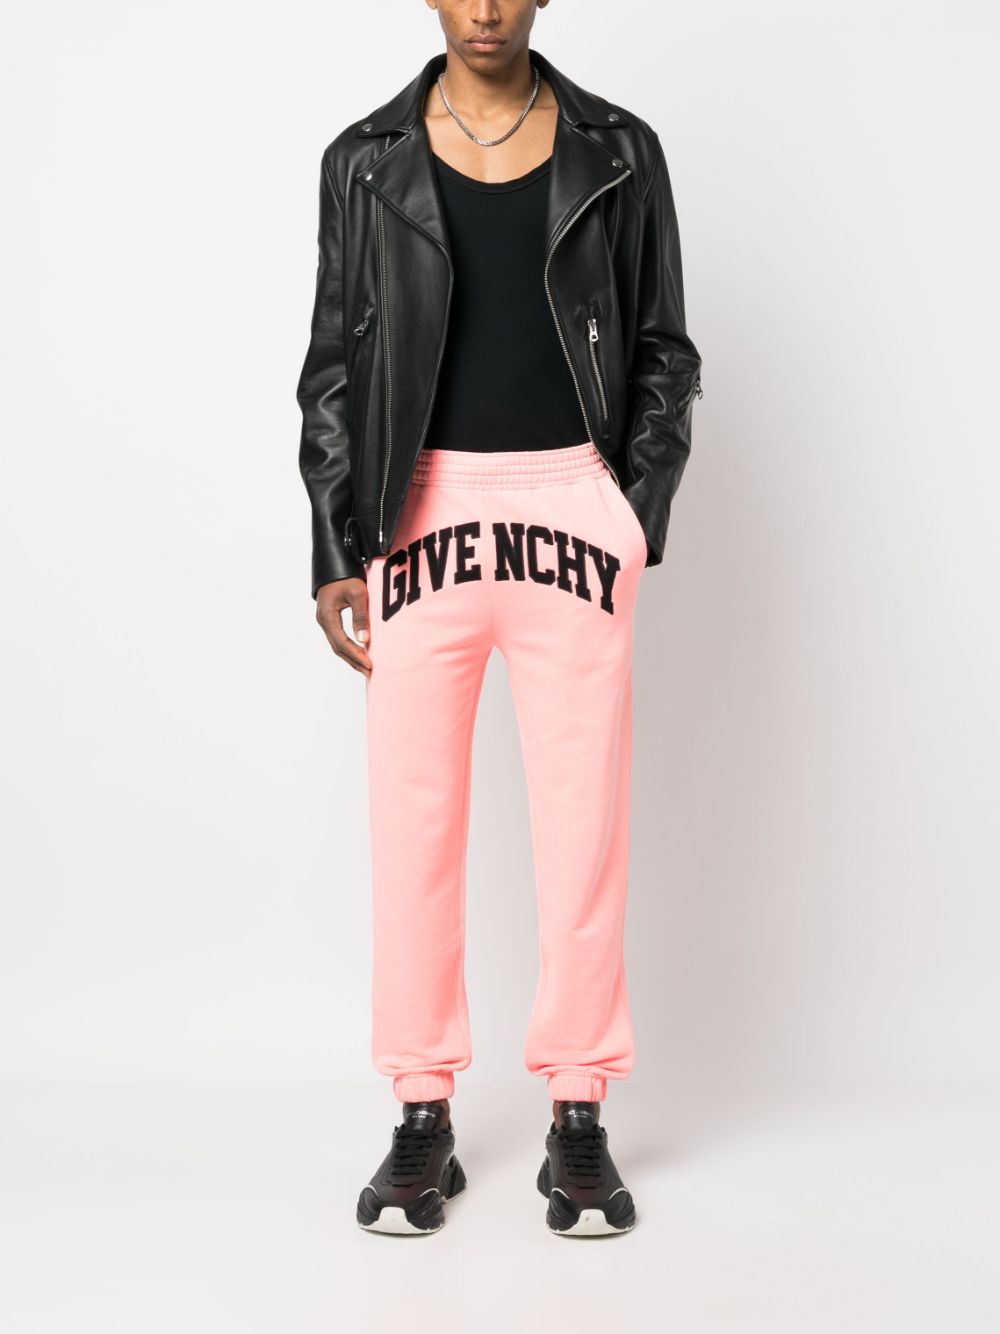 Givenchy Trainingsbroek met geborduurd logo Roze